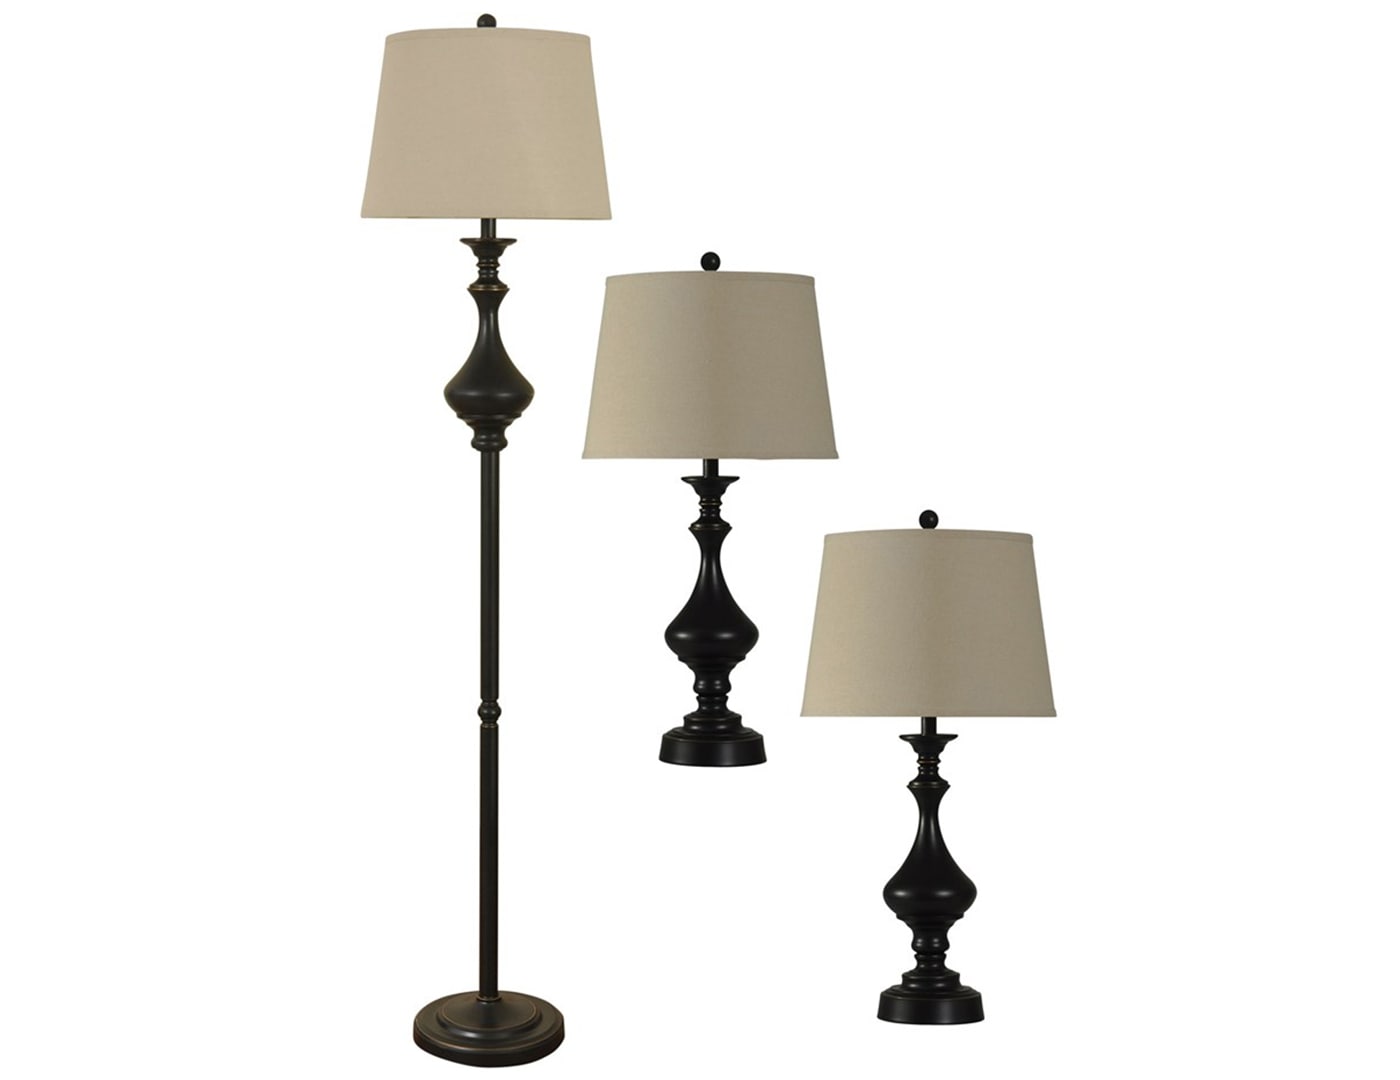 Set of 3 Dark Bronze Lamps -2 Table Lamps plus 1 Floor Lamp- 31/66"H